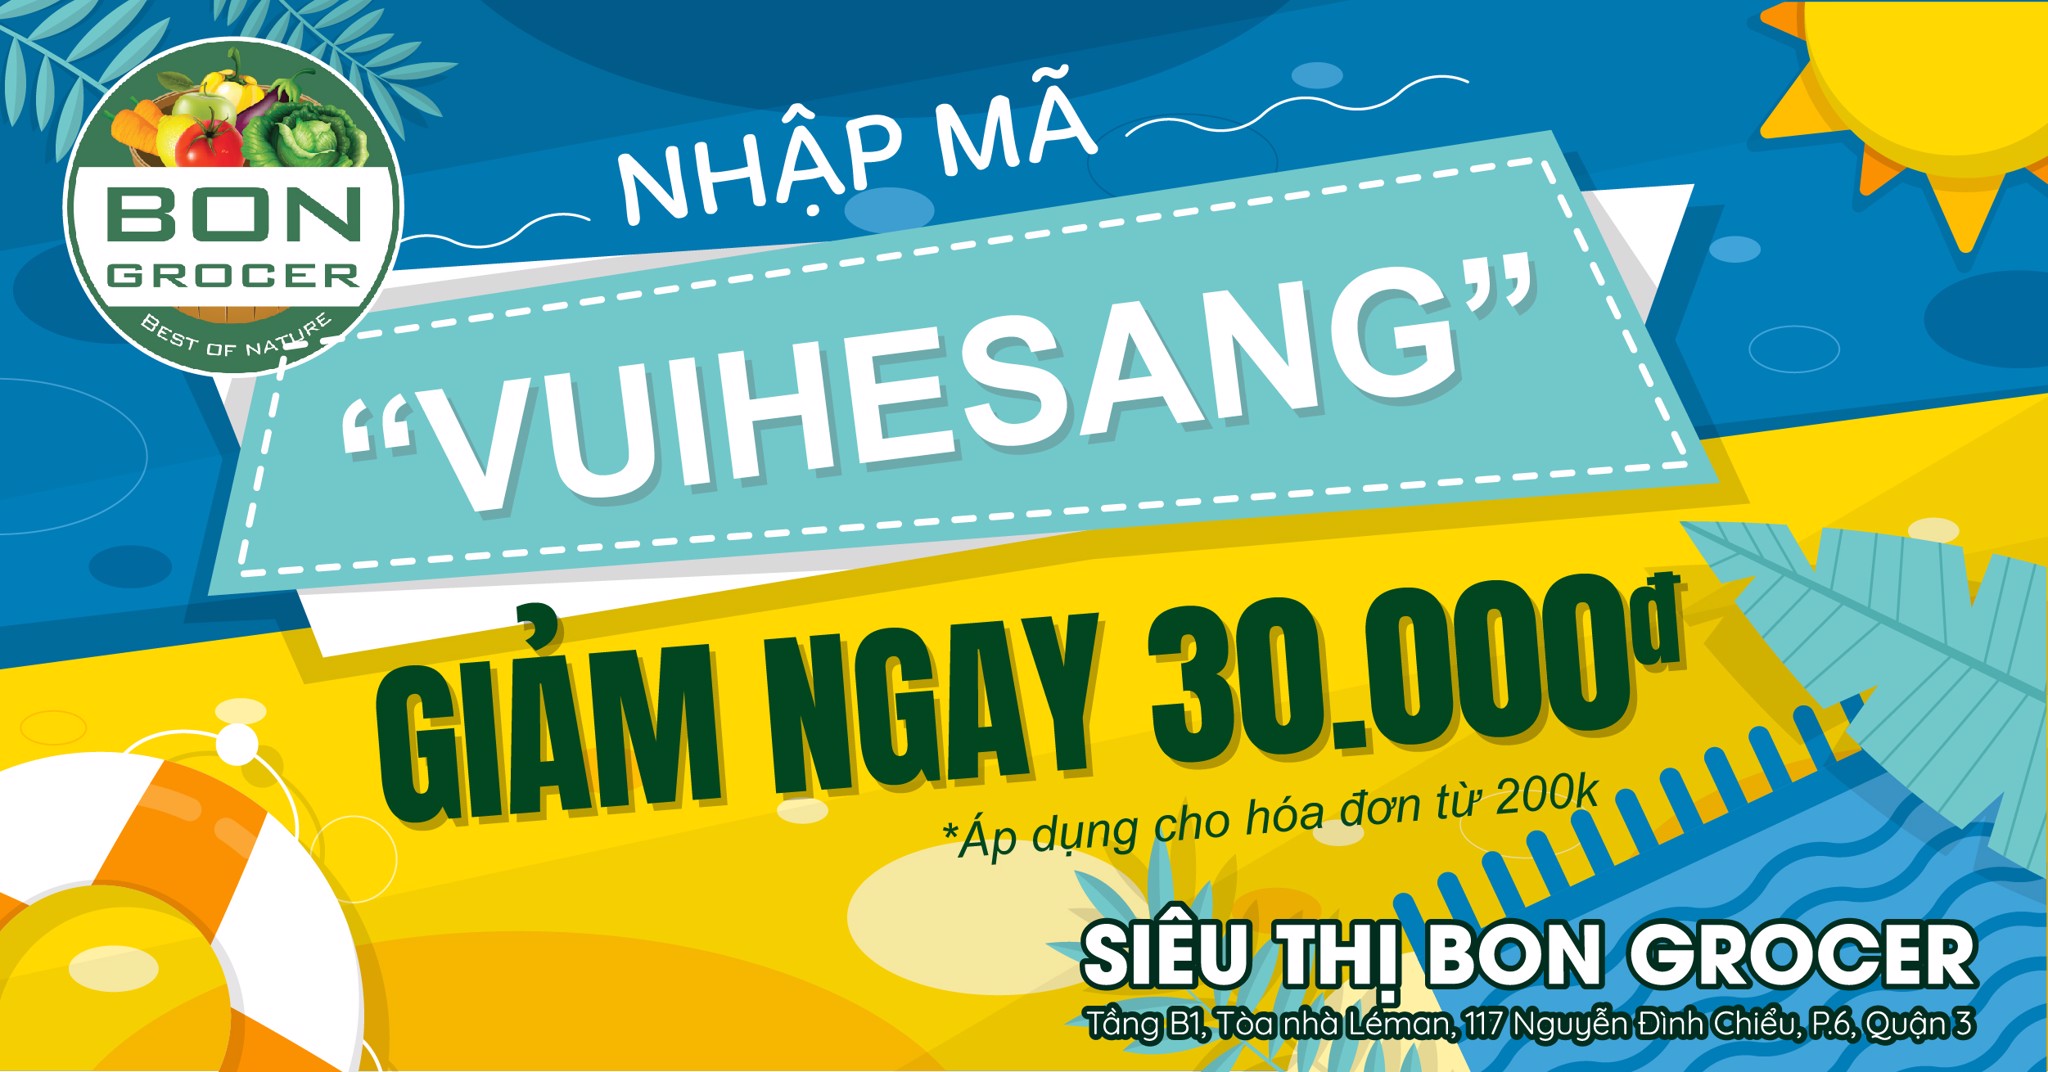 GIẢM NGAY 30,000Đ - KHI MUA ONLINE